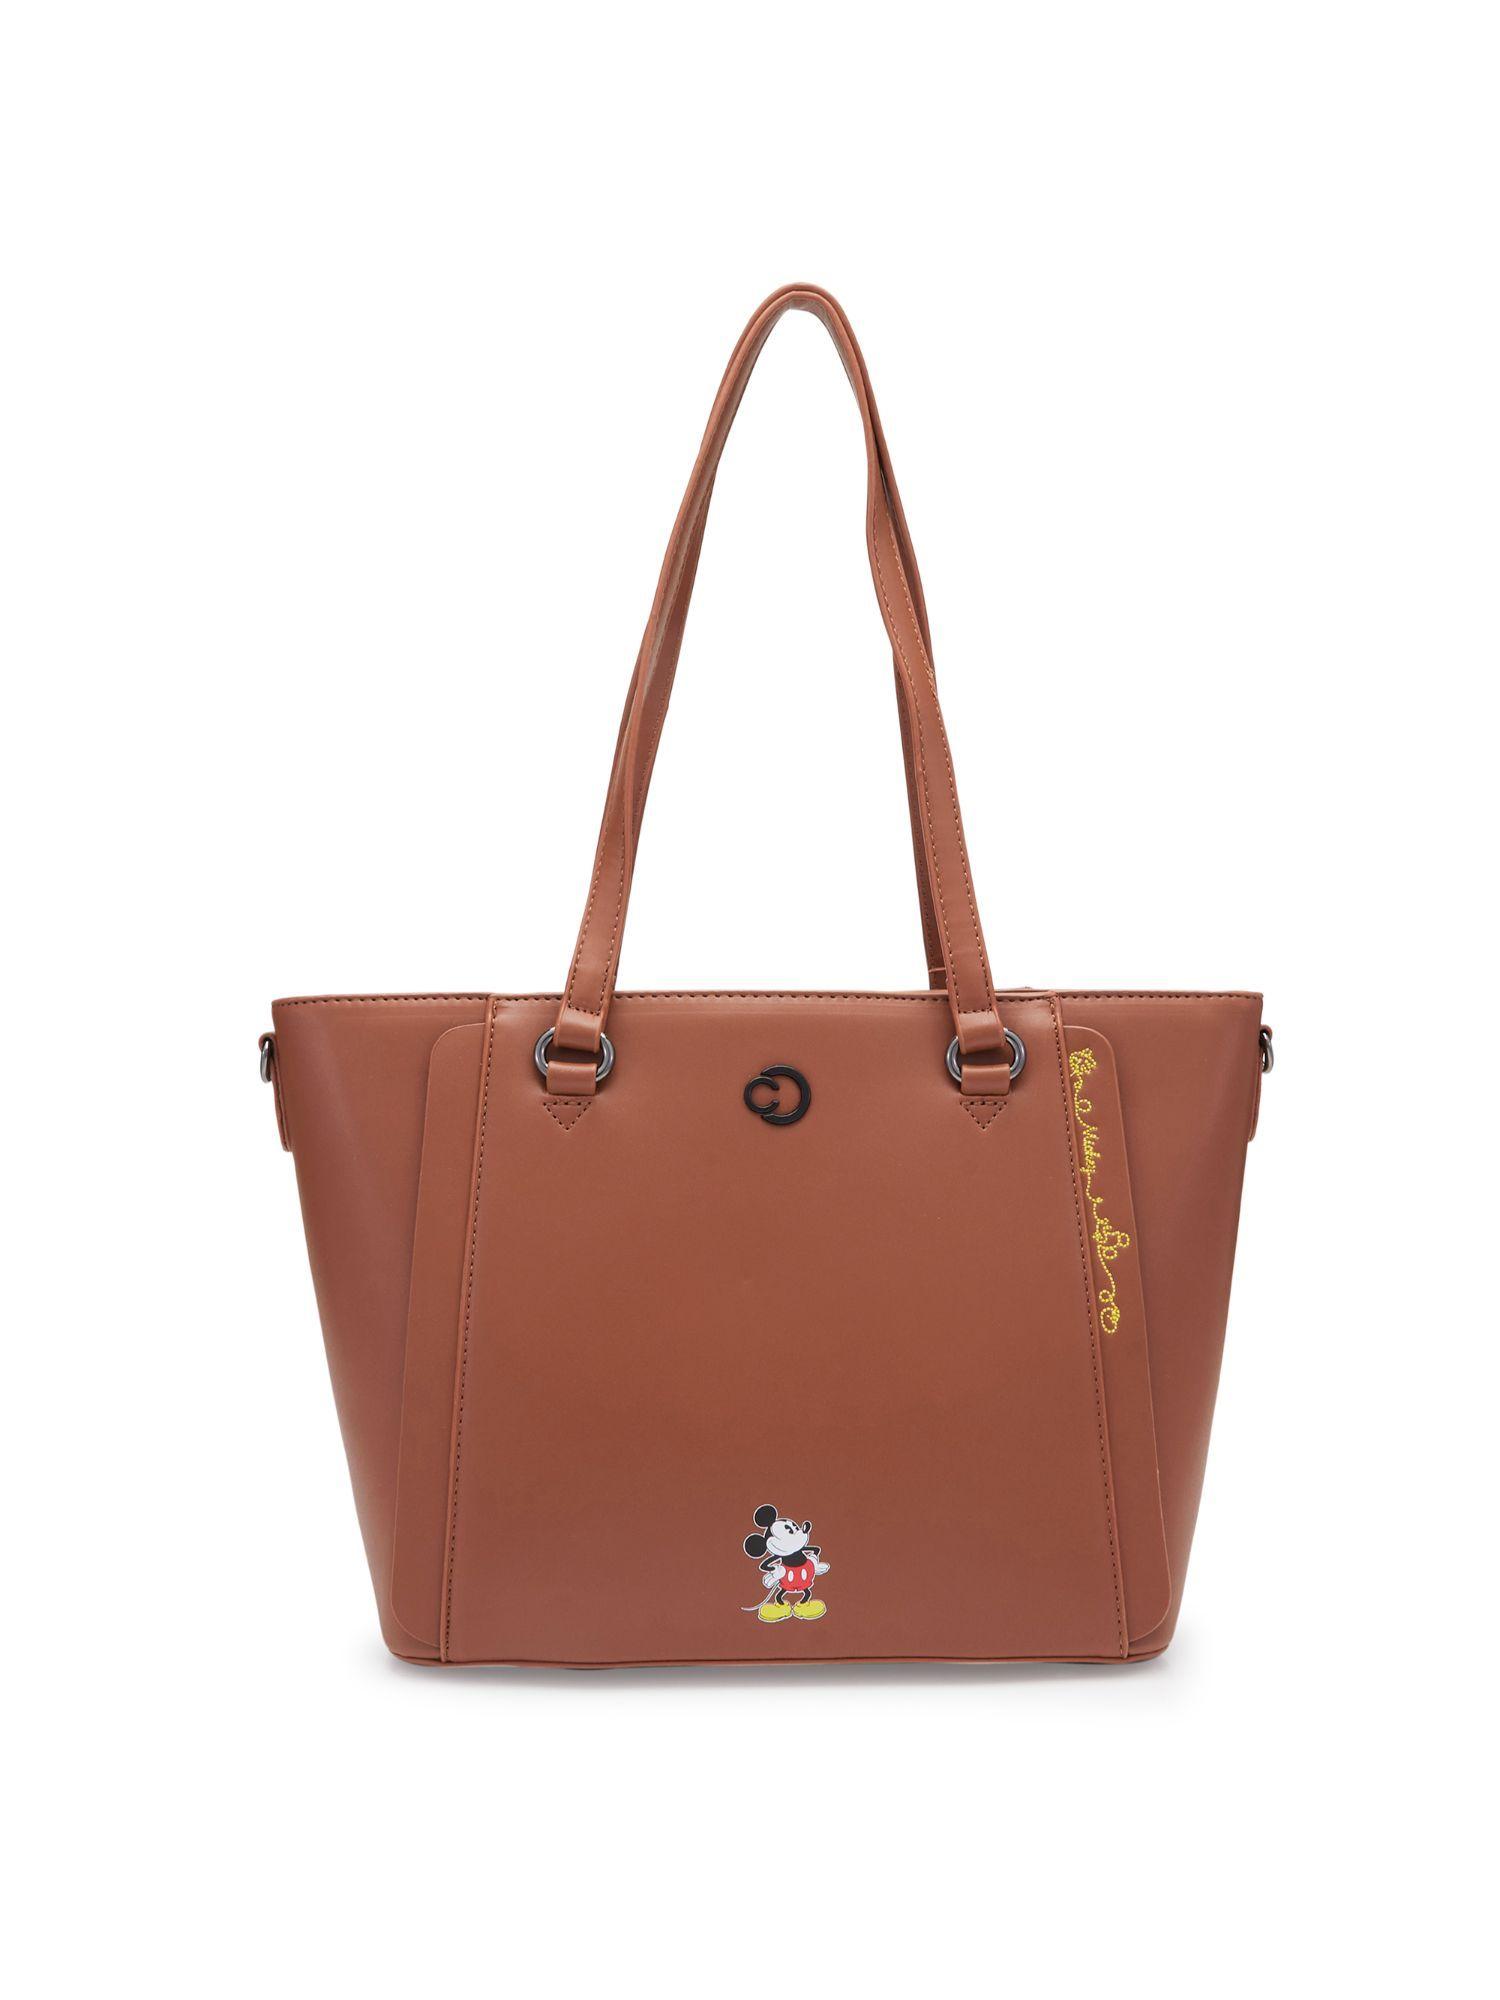 tiana tote bag medium brown (medium)